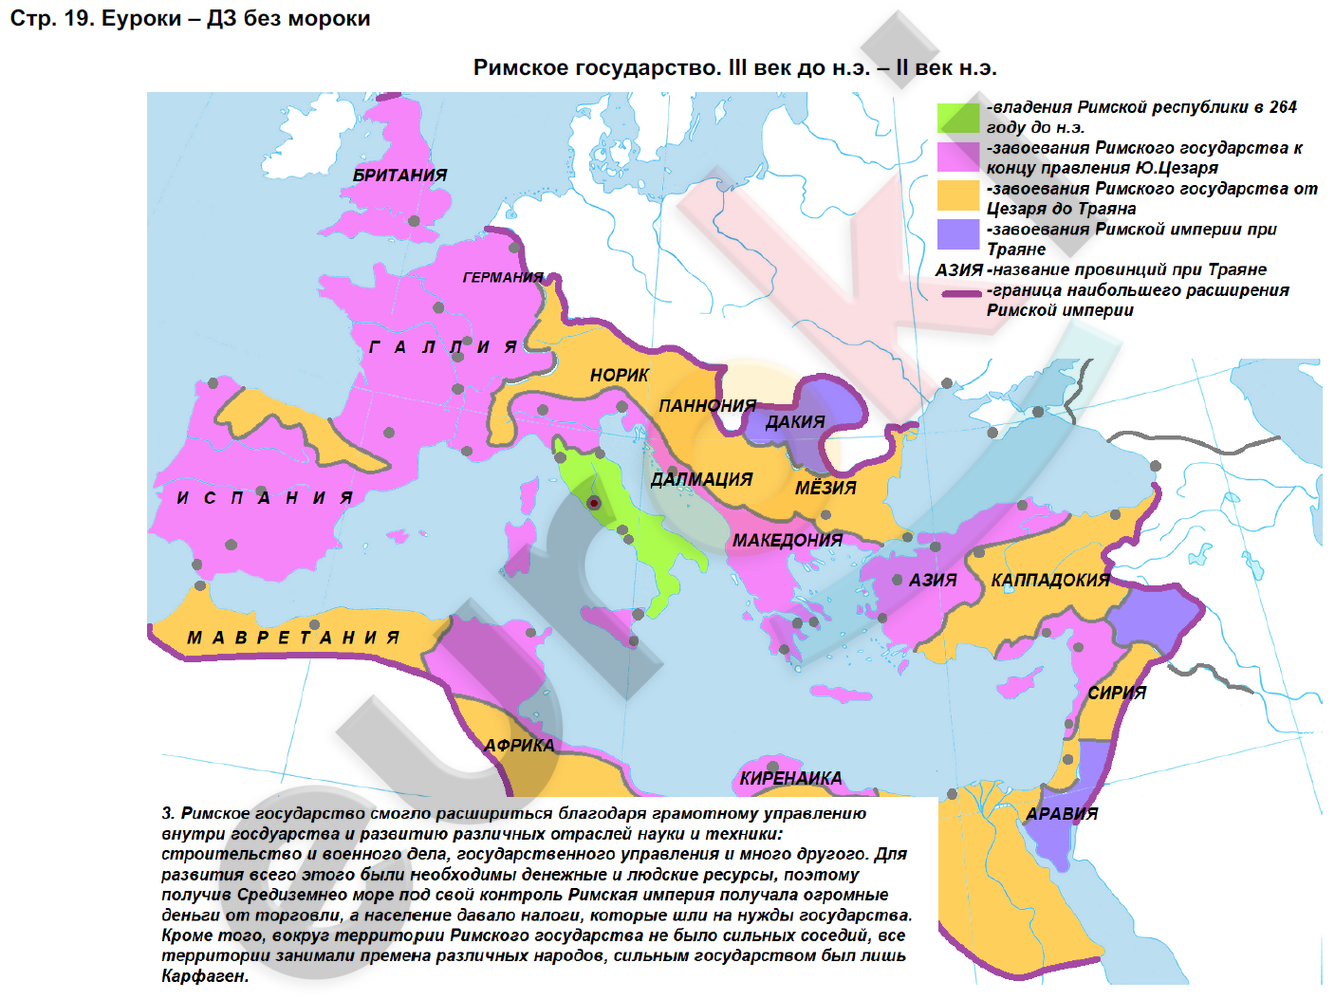 Контурная карта по истории 5 курбский. Контурная карта рост Римского государства.